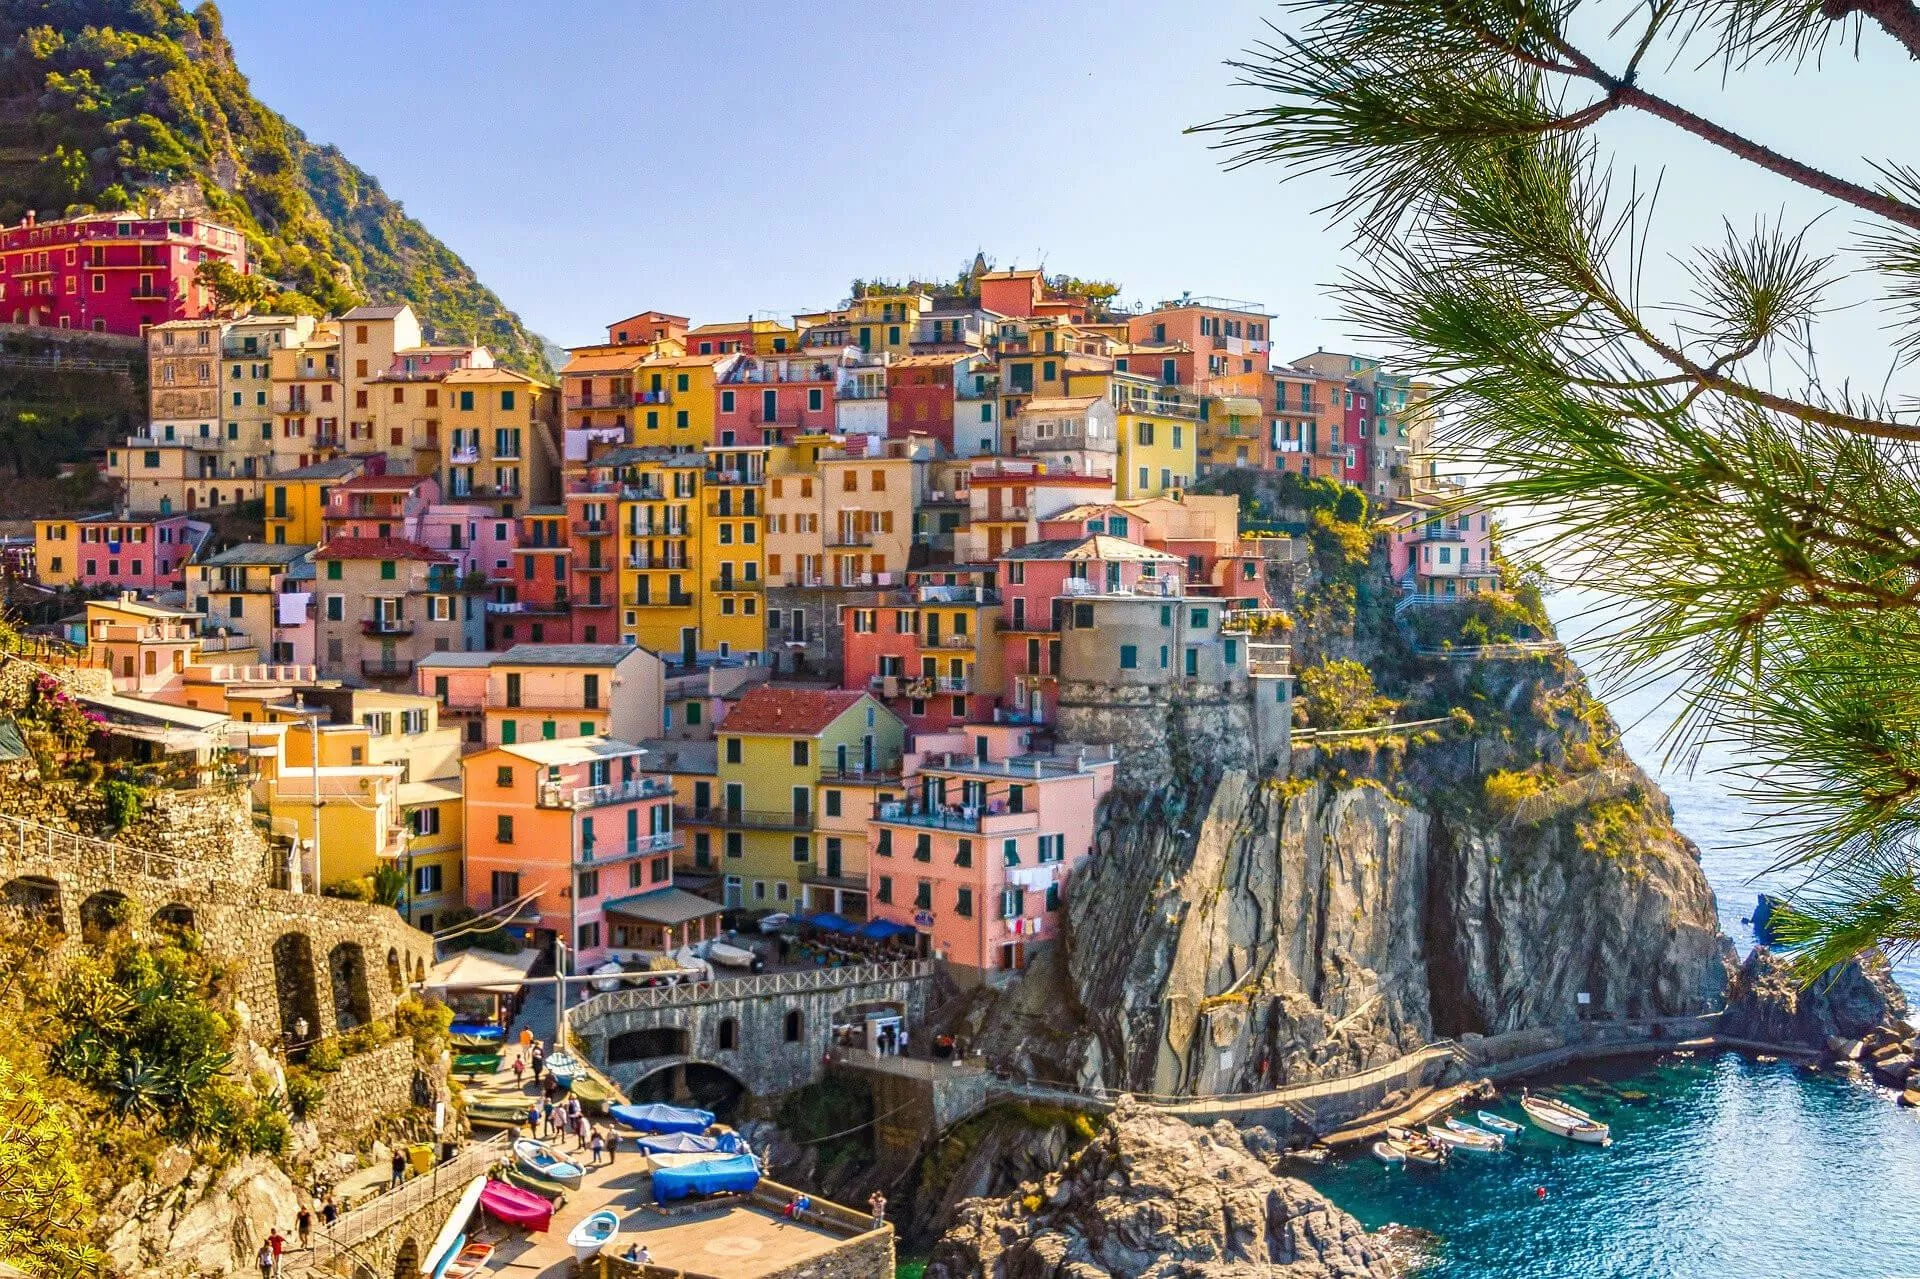 6 mooiste plekken in Italië. Beste plaatsen om te bezoeken